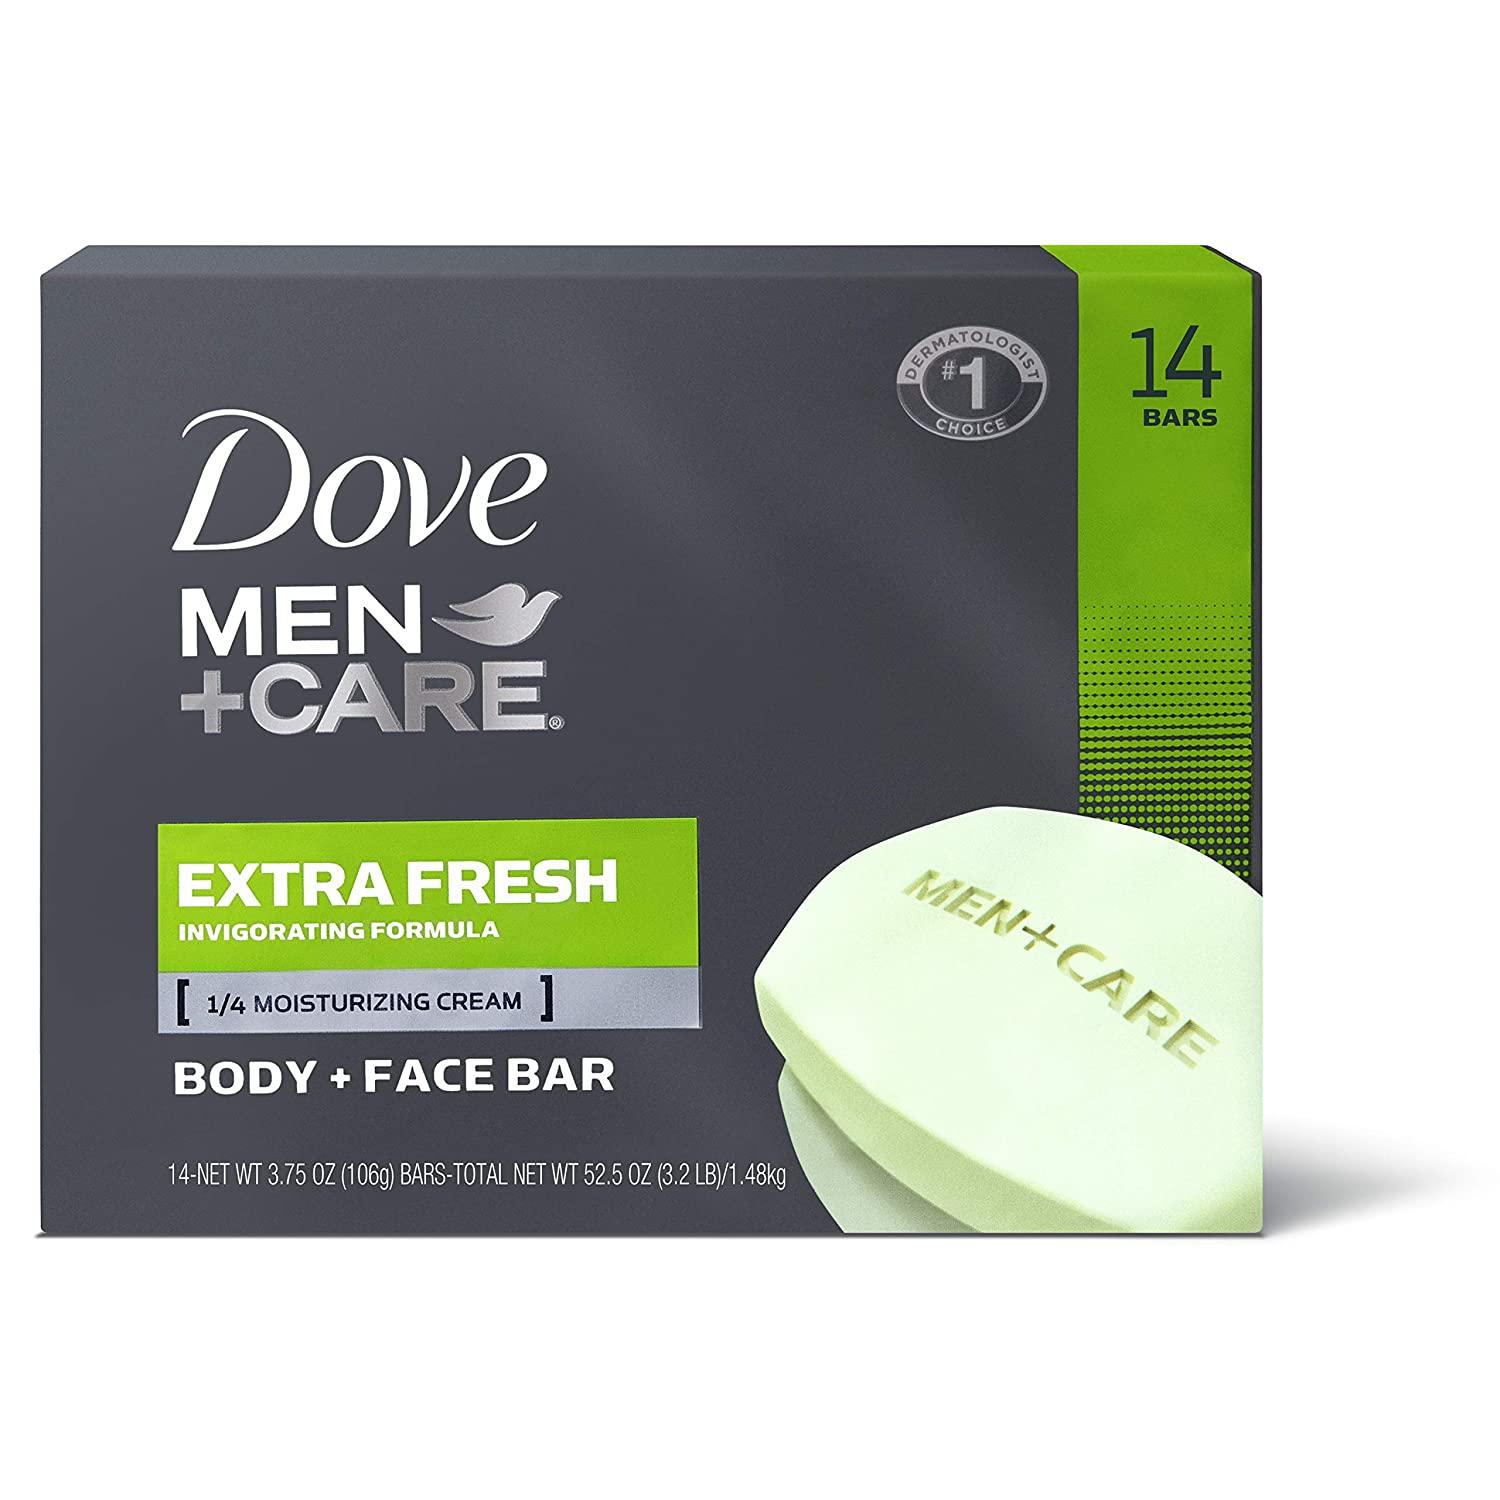 14 Dove Men+Care Body Face Bar for $8.06 Shipped